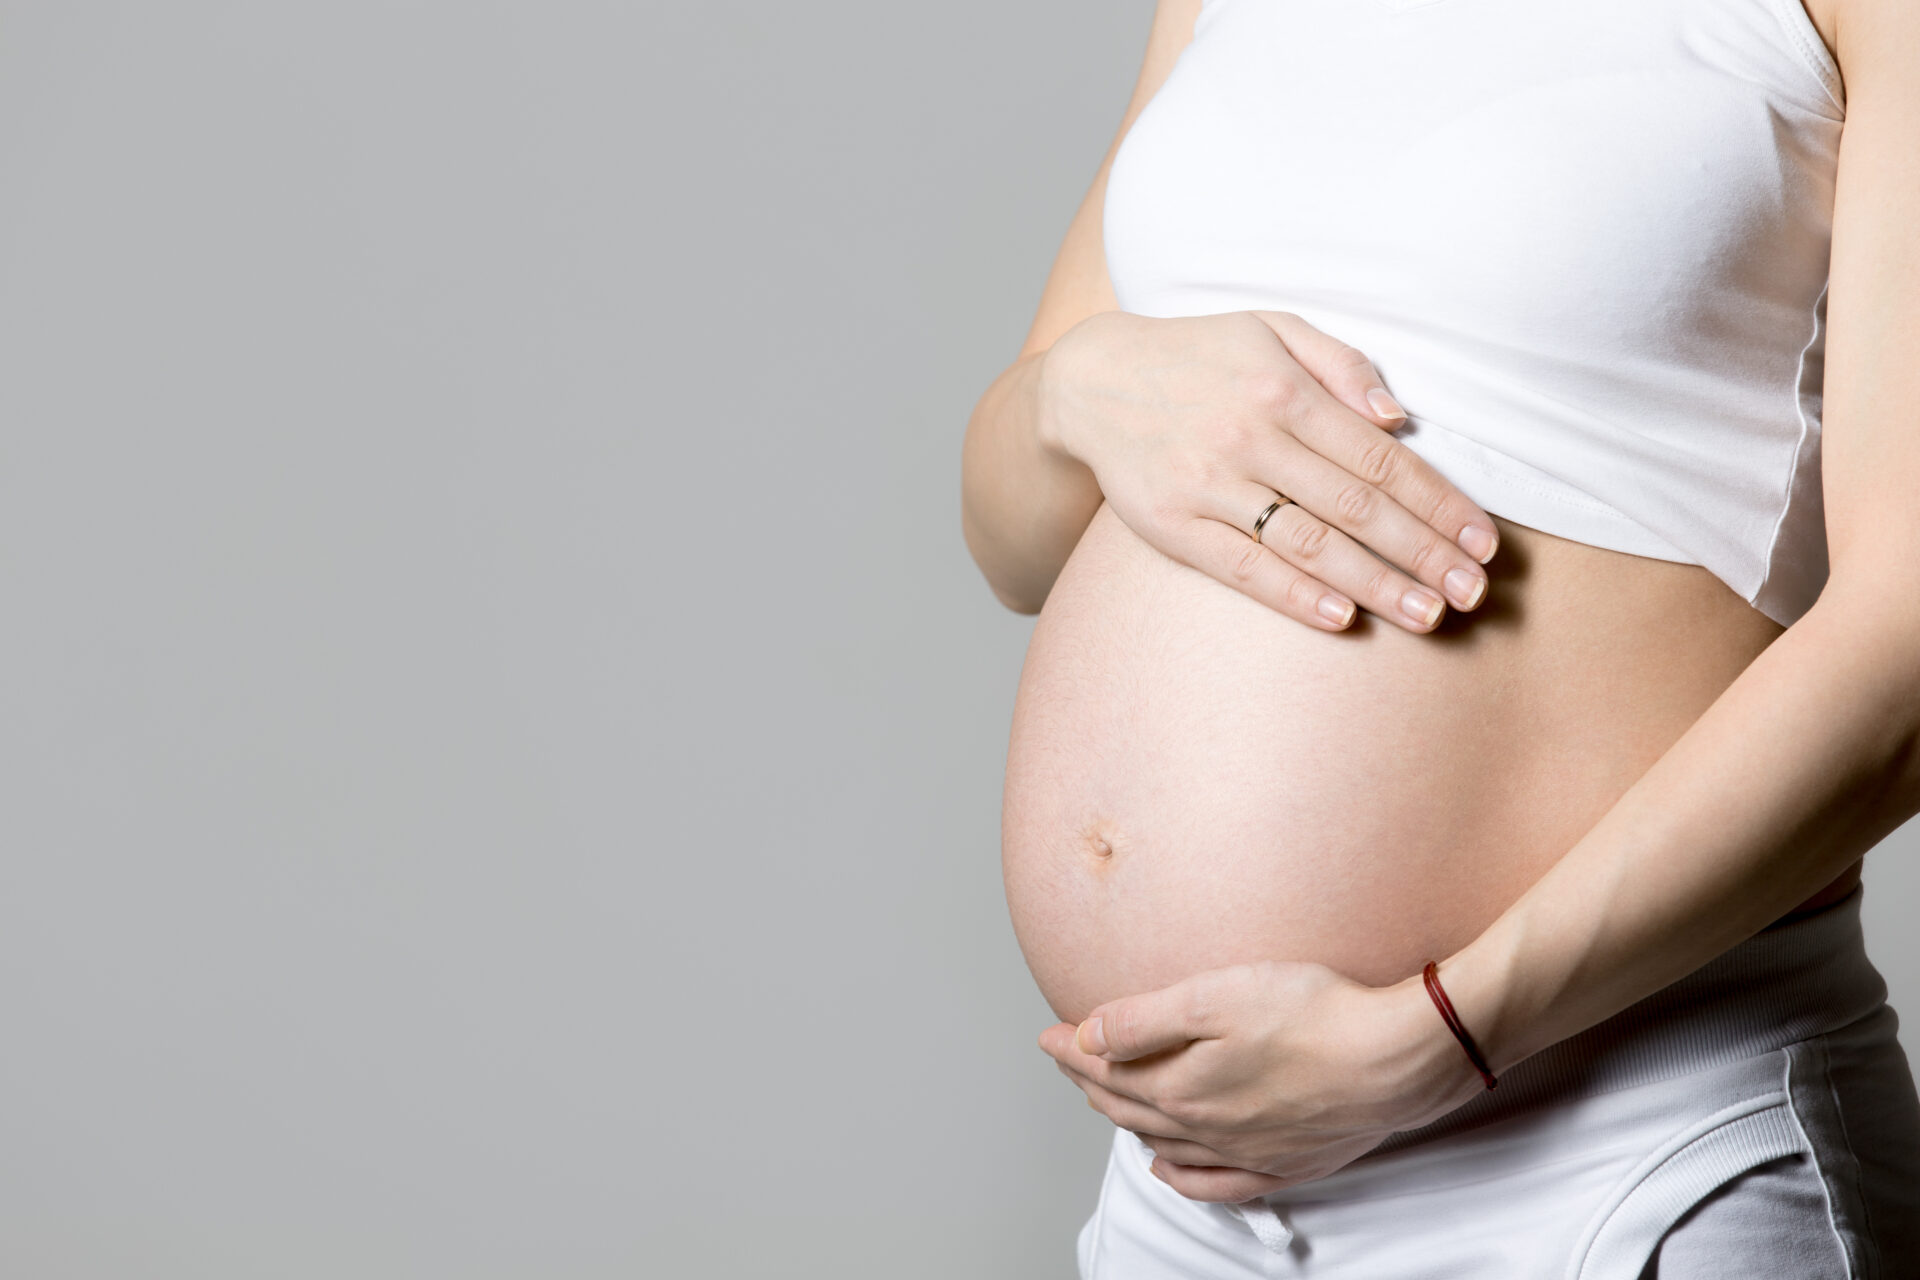 Embarazo Prueba Rh Laboratorio Análisis Clínicos Morelia